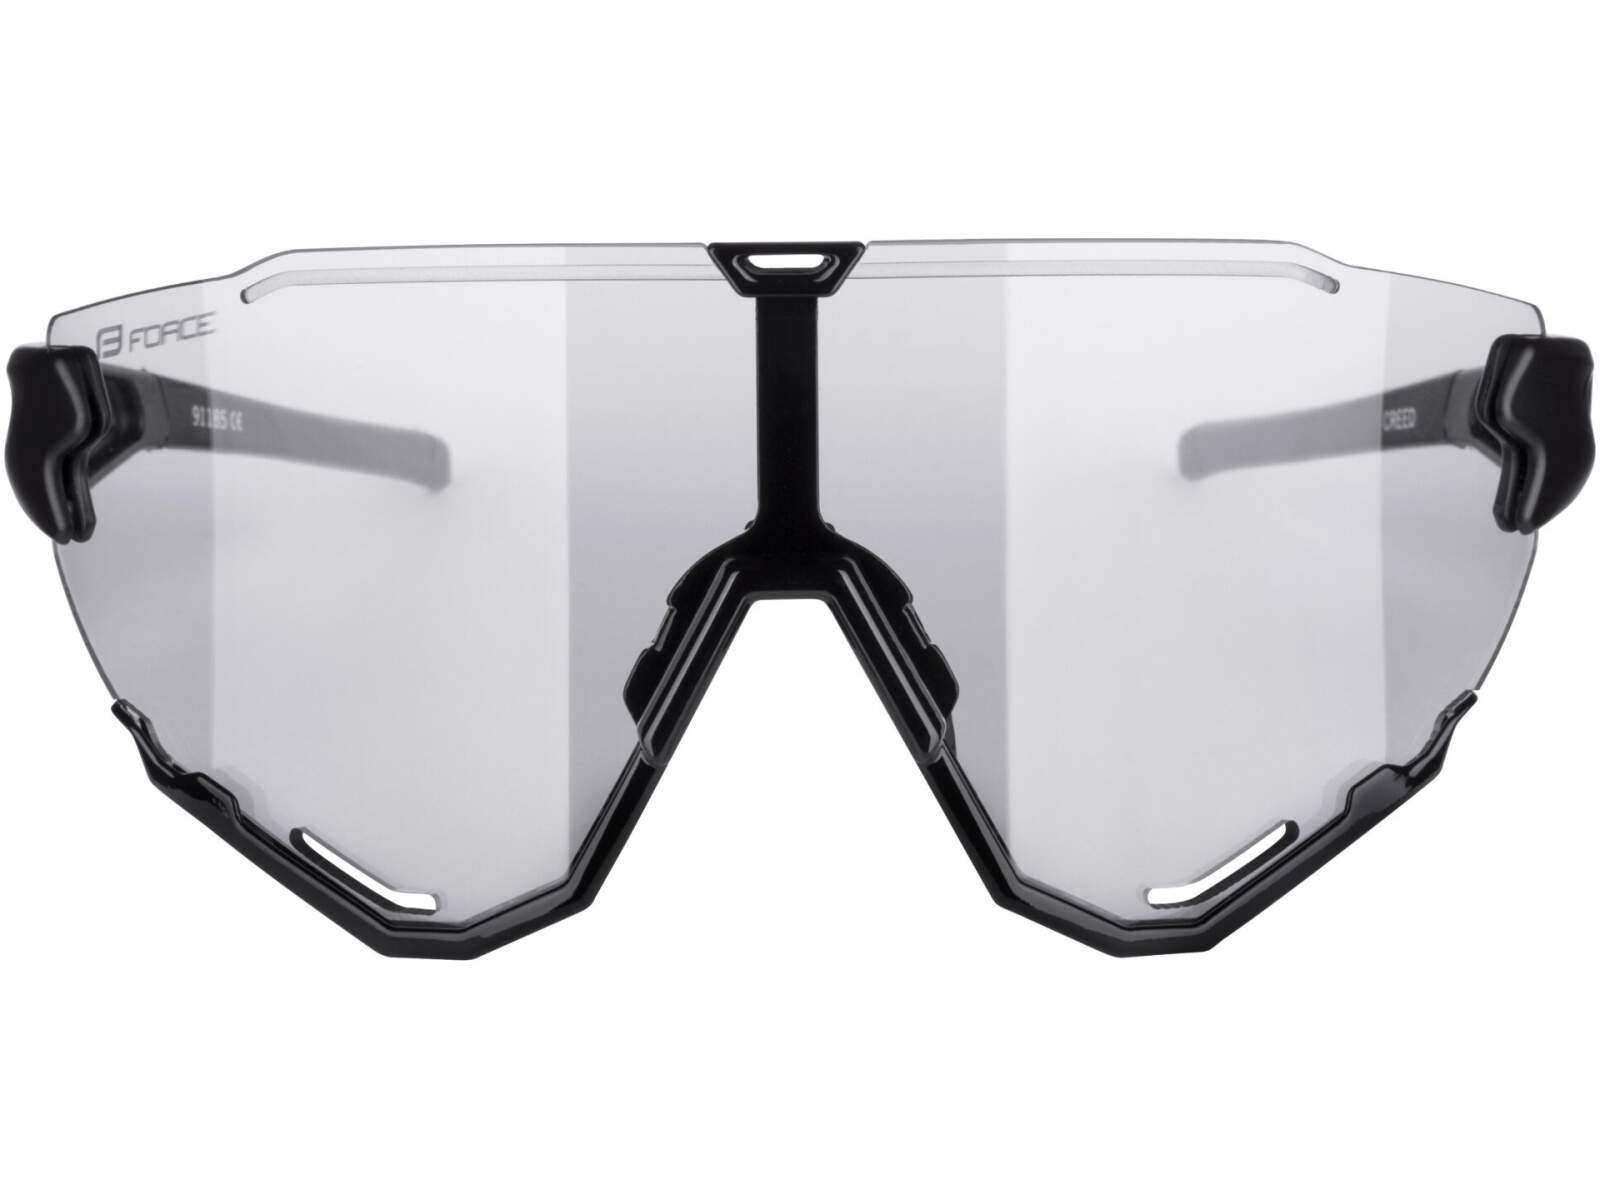 Okulary rowerowe Force Creed szkła fotochromowe